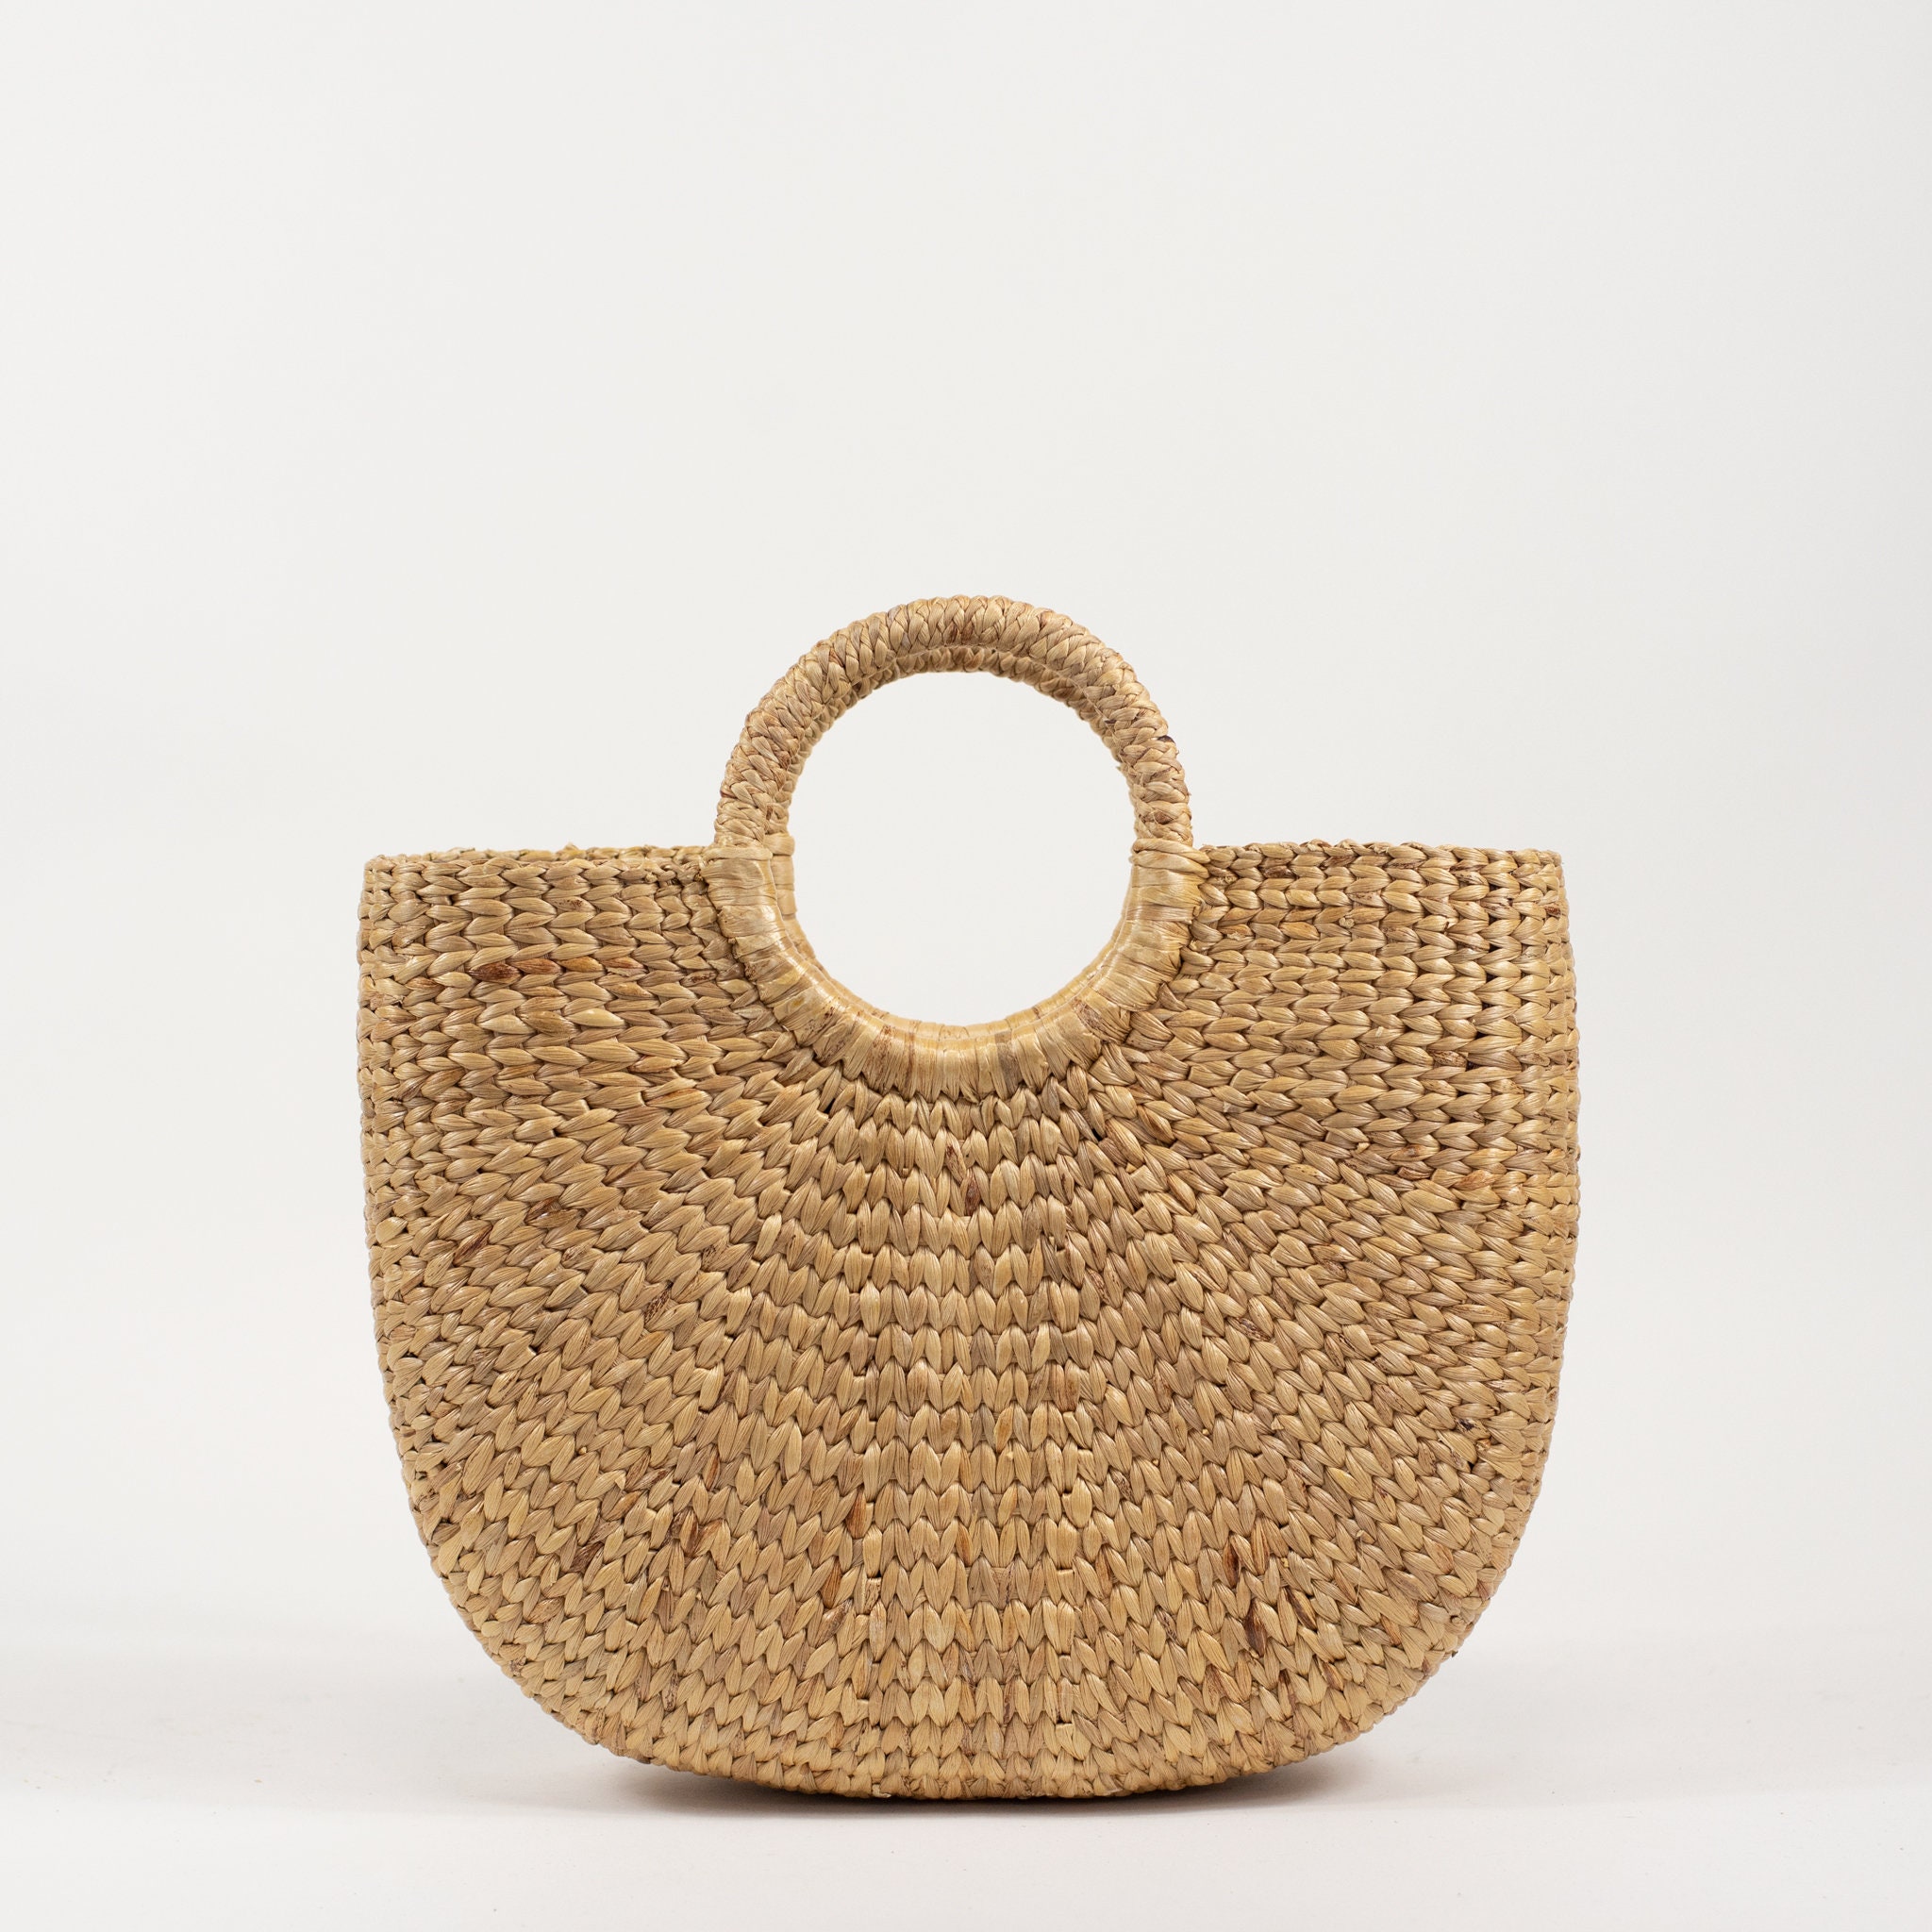 Medium straw bag straw market tote picnic basket straw | Etsy